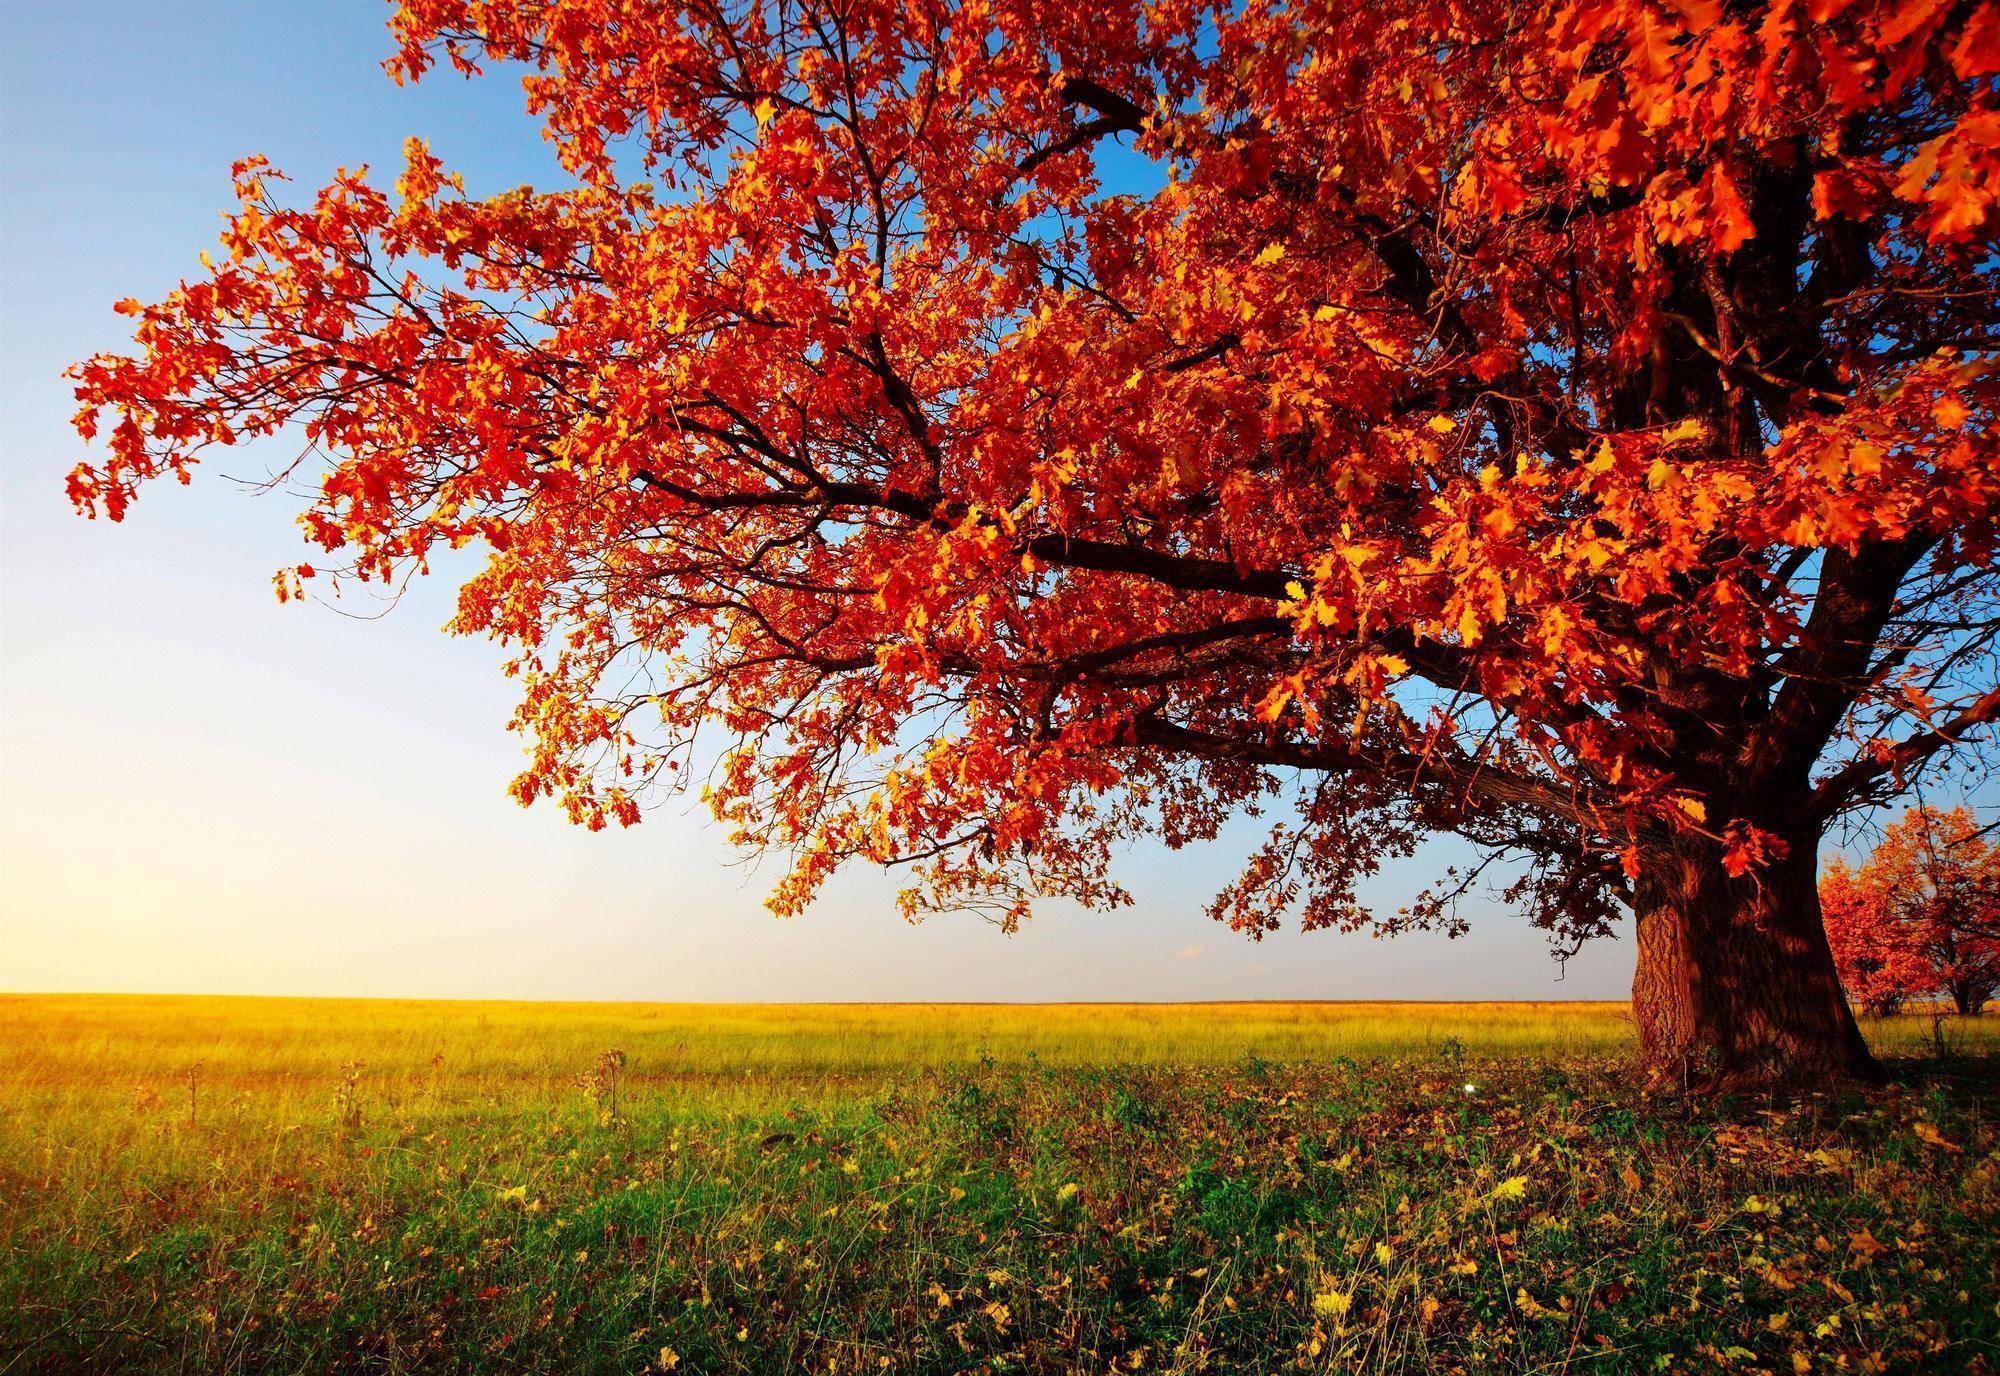 Hãy để những cây mùa thu tuyệt đẹp quyến rũ mình vào cái đẹp đầy ngoạn mục. Những hình nền này sẽ mang lại cho bạn sự độc đáo và sự mới lạ khiến cho không gian làm việc của bạn trở nên thú vị hơn. Hãy click ngay để tìm kiếm hình nền cây mùa thu đẹp nhất nhé!